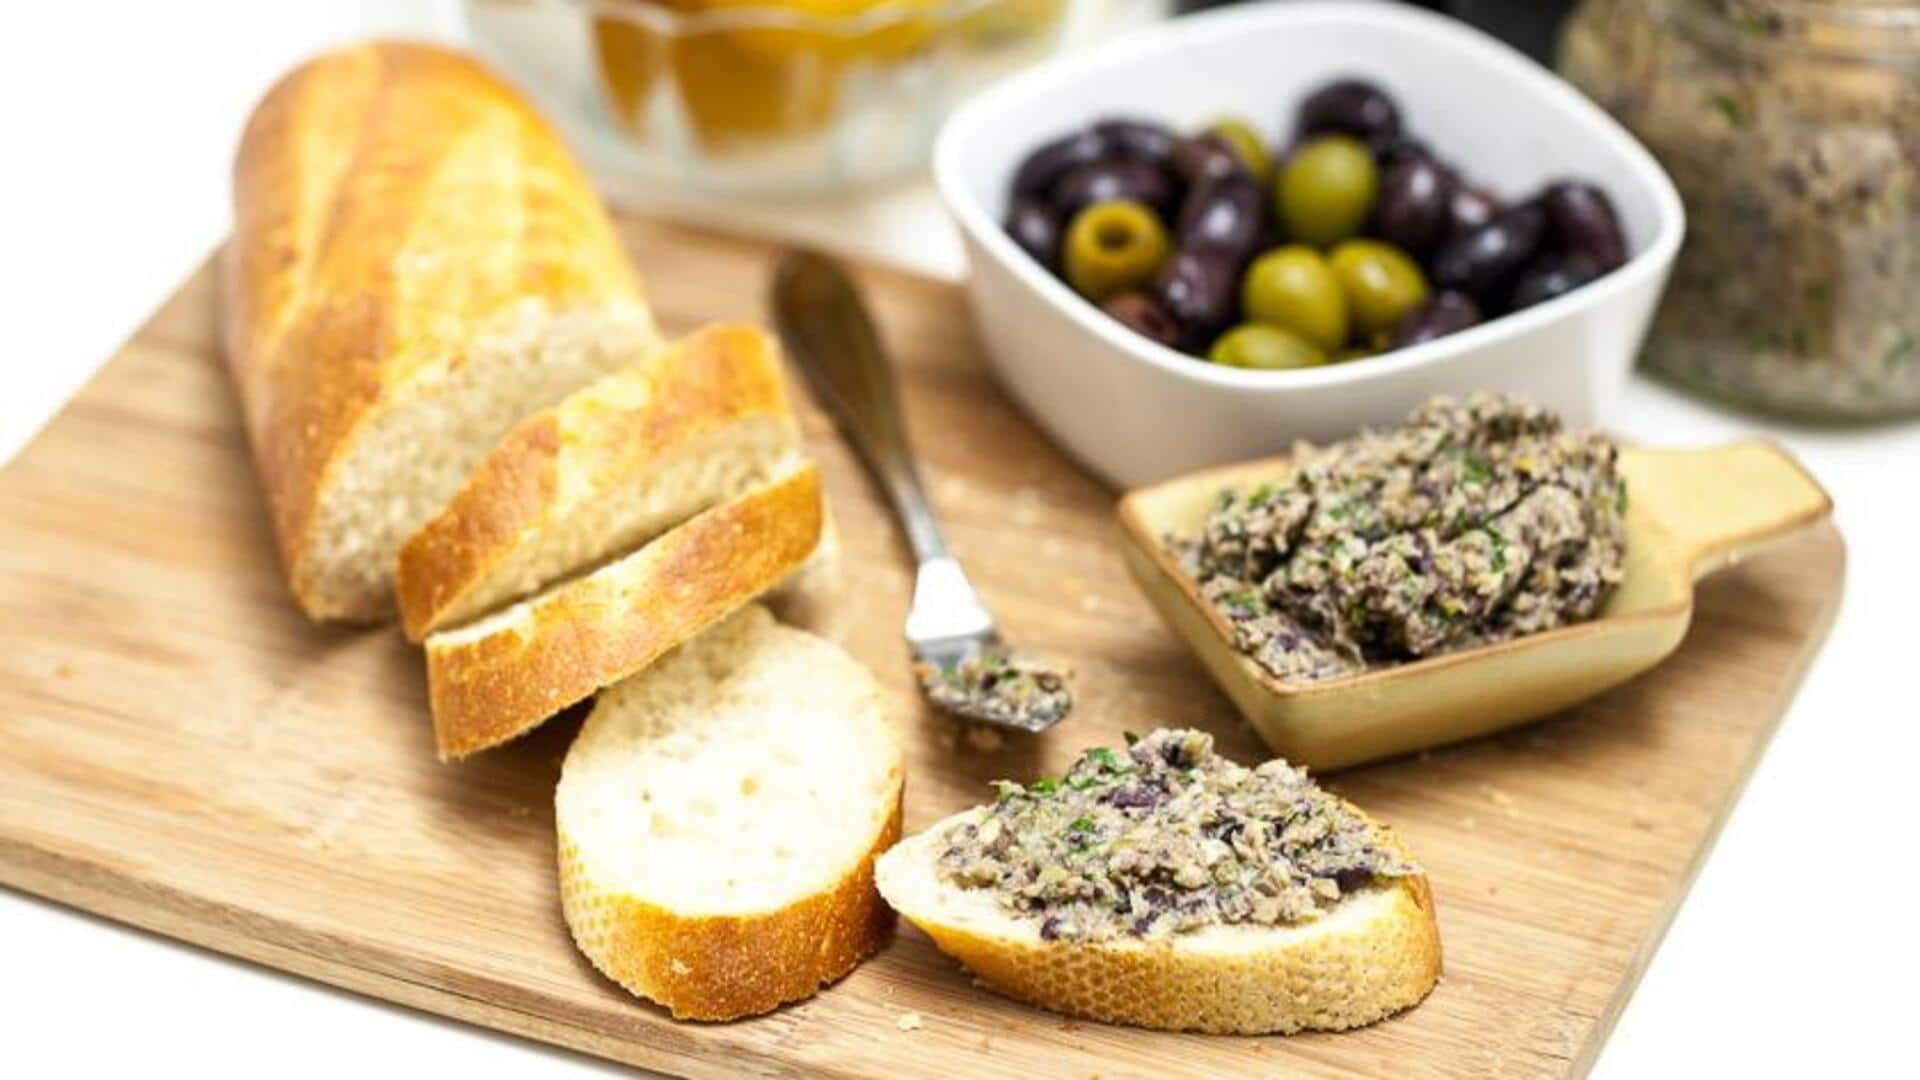 Rustic artichoke olive tapenade: A step-by-step recipe